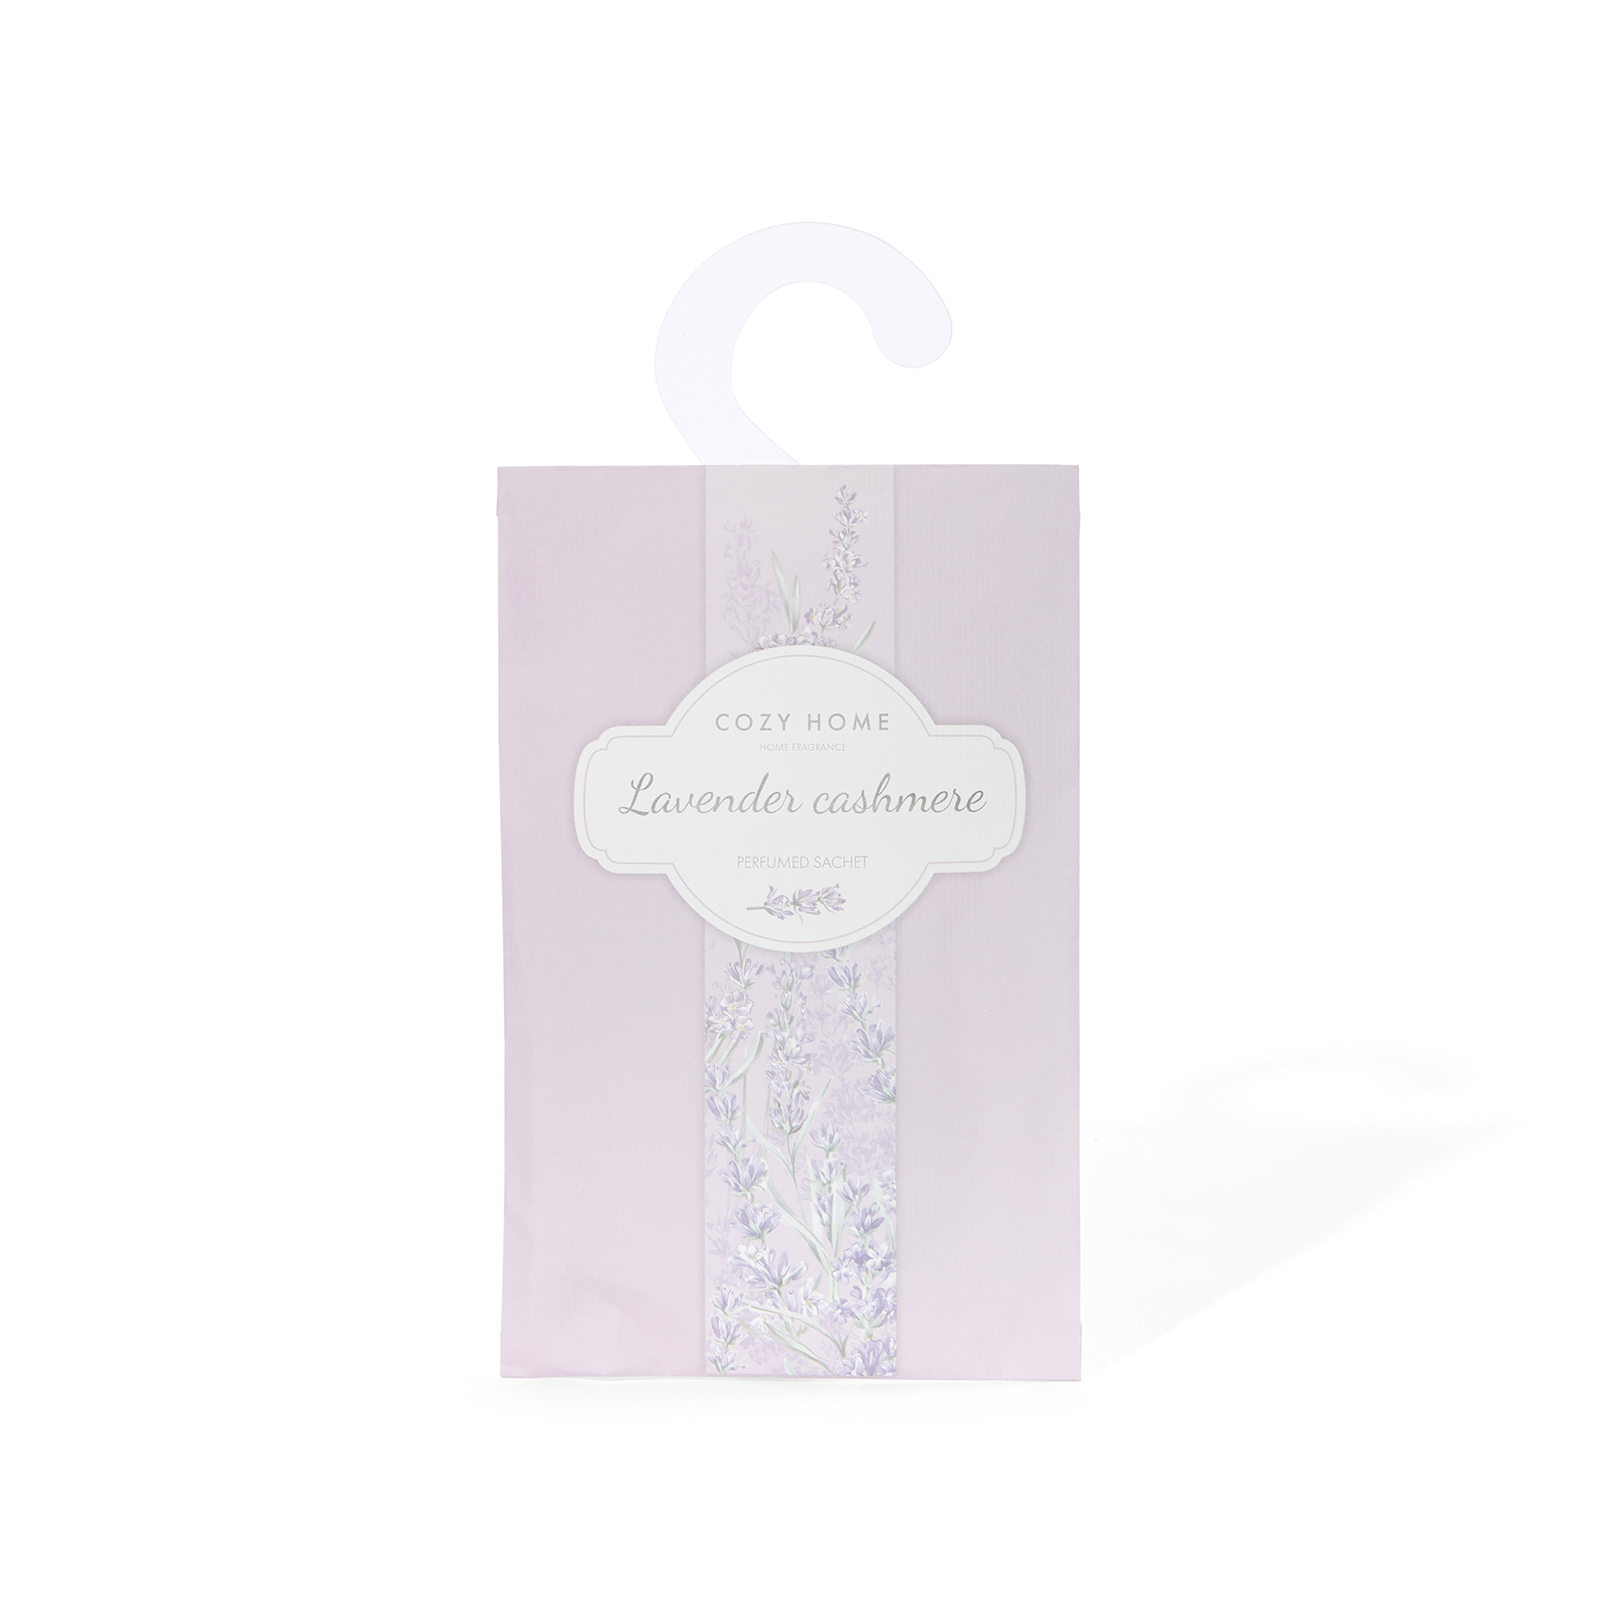 Саше ароматическое Lavender cashmere